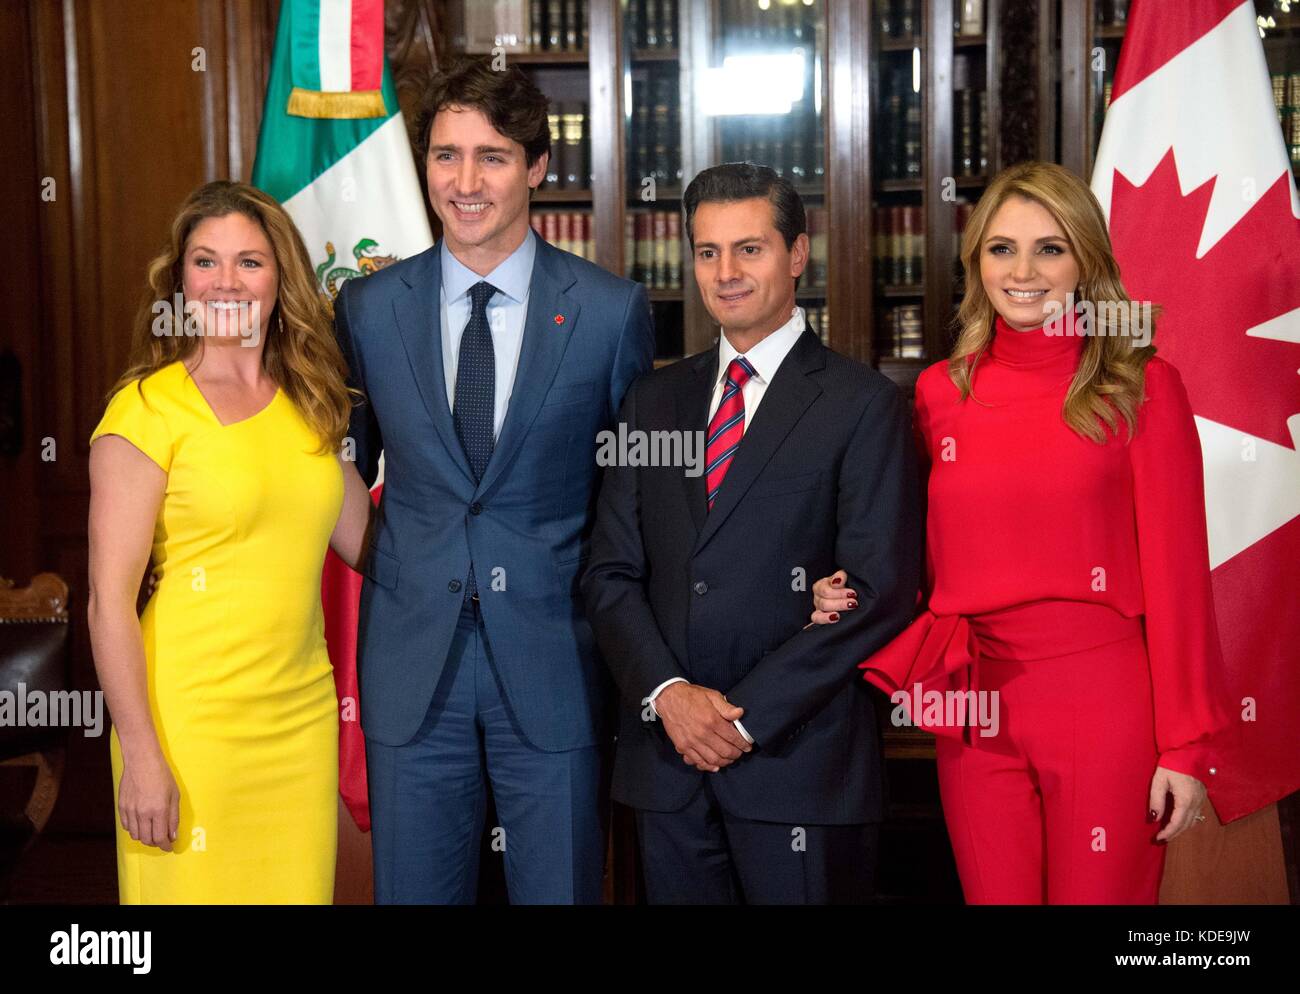 Le premier ministre du Canada, Justin Trudeau et son épouse Sophie Grégoire Trudeau, à gauche, sont accueillis par le président mexicain Enrique pena Nieto, et son épouse angelica rivera lors de la cérémonie d'arrivée au palacio nacional, 12 octobre 2017 à Mexico, Mexique. Presidenciamx planetpix (via) Banque D'Images